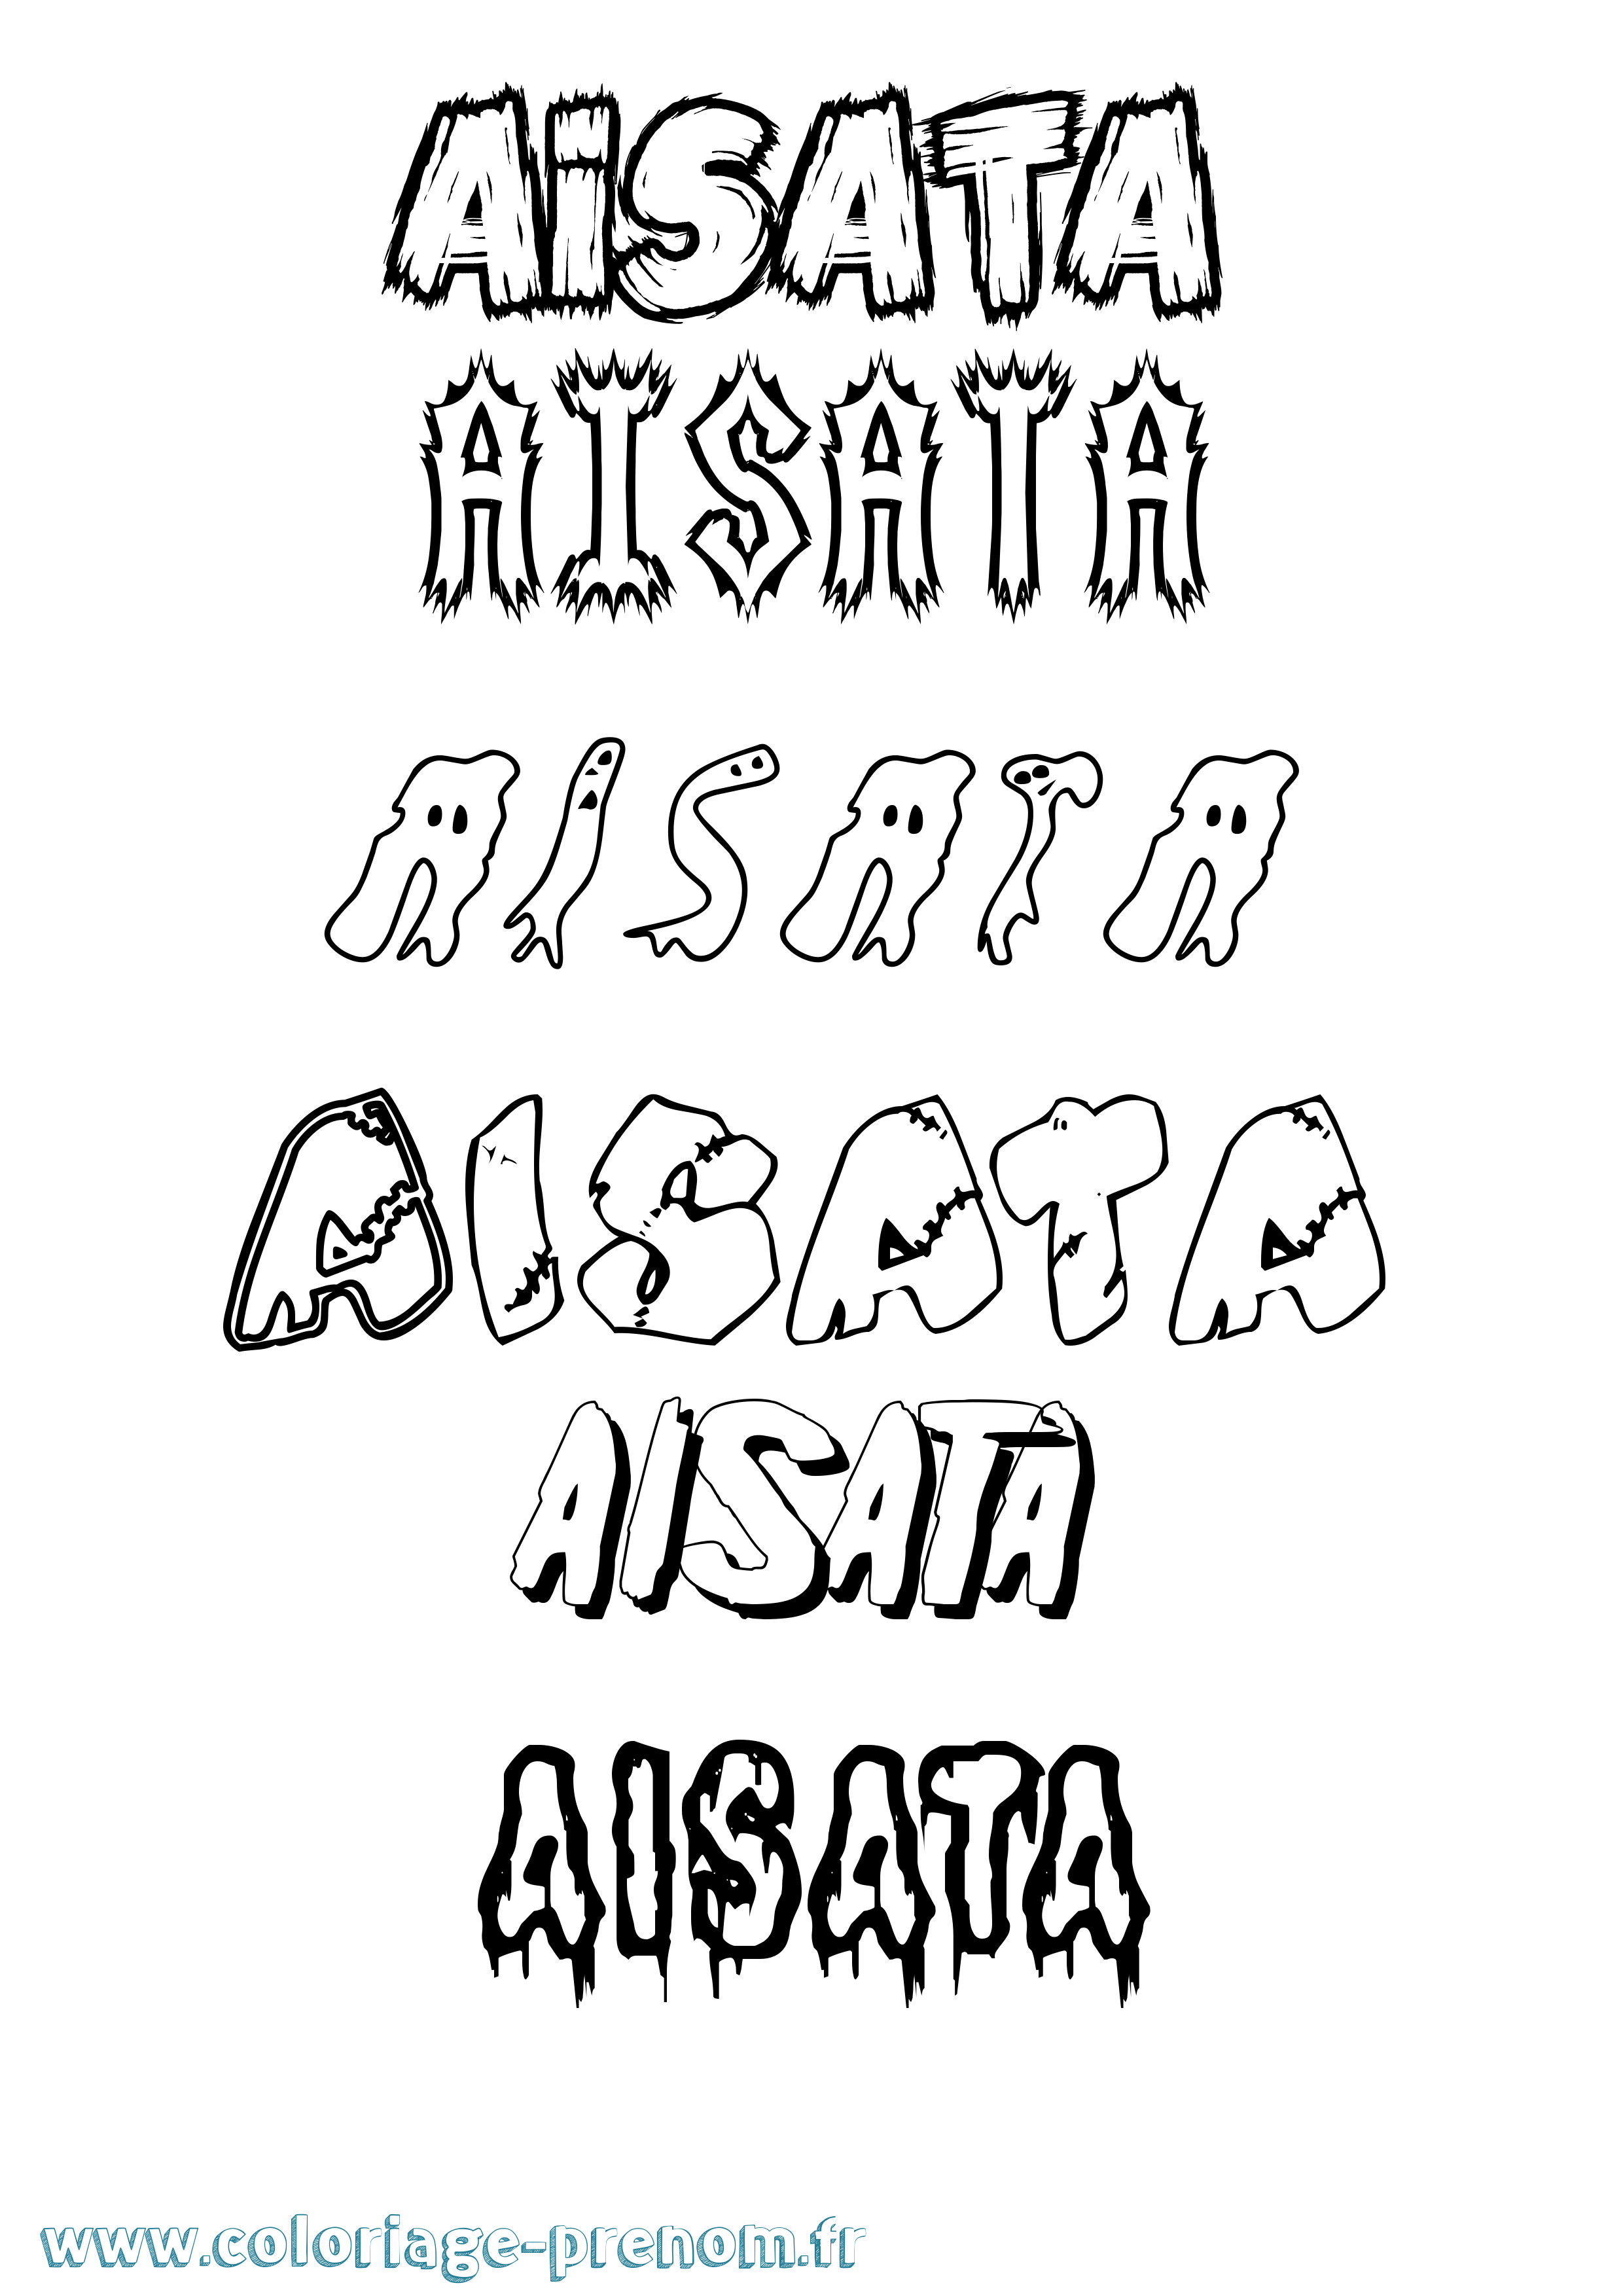 Coloriage prénom Aisata Frisson